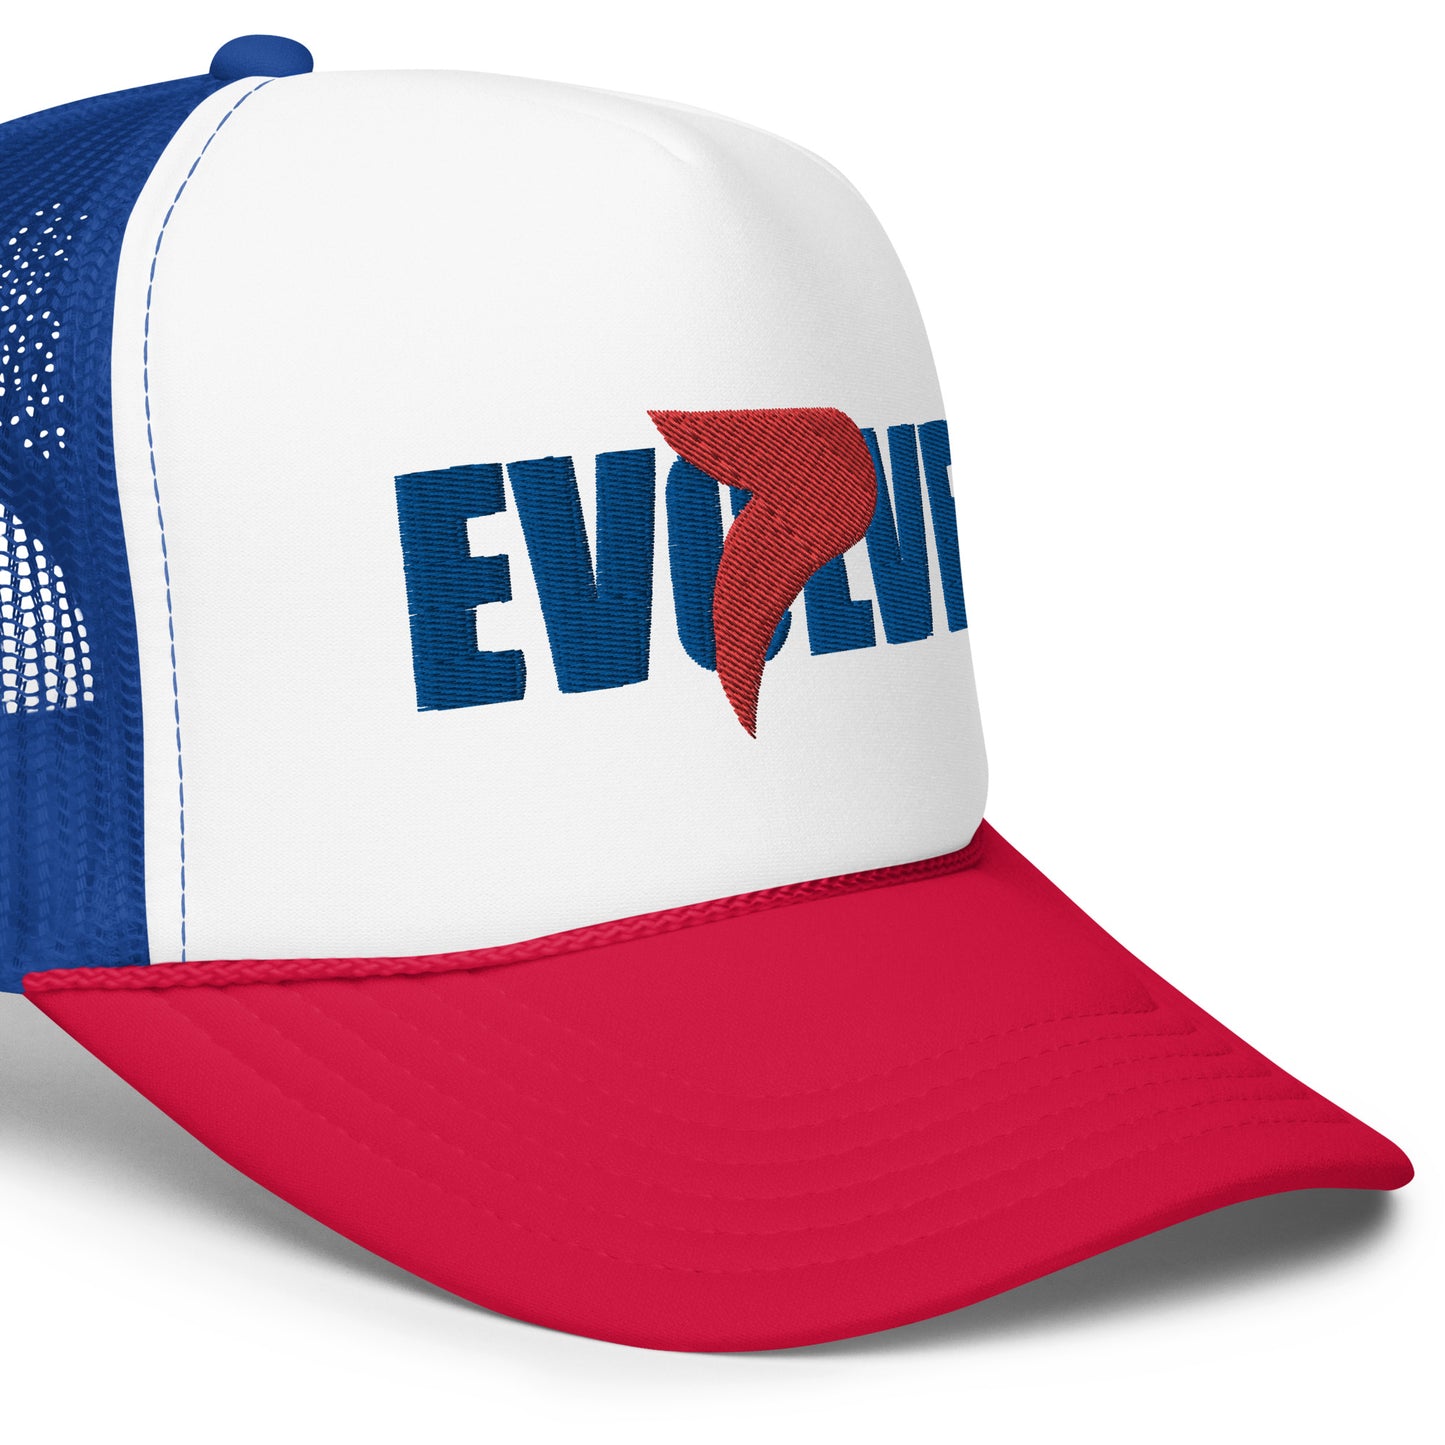 EVOLVE Trucker Hat